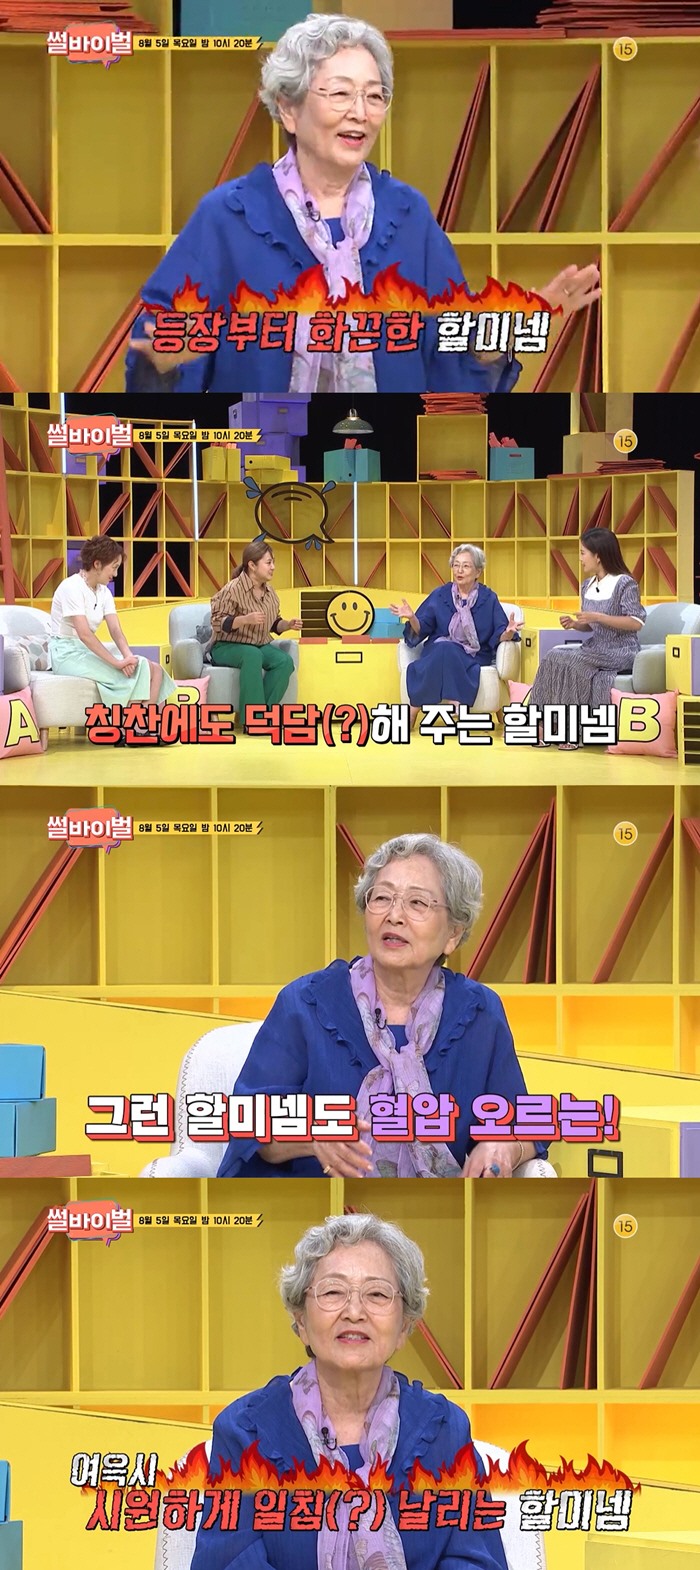 ‘썰바이벌’ 김영옥 “90살에 이혼 하고 싶어” 폭탄 발언